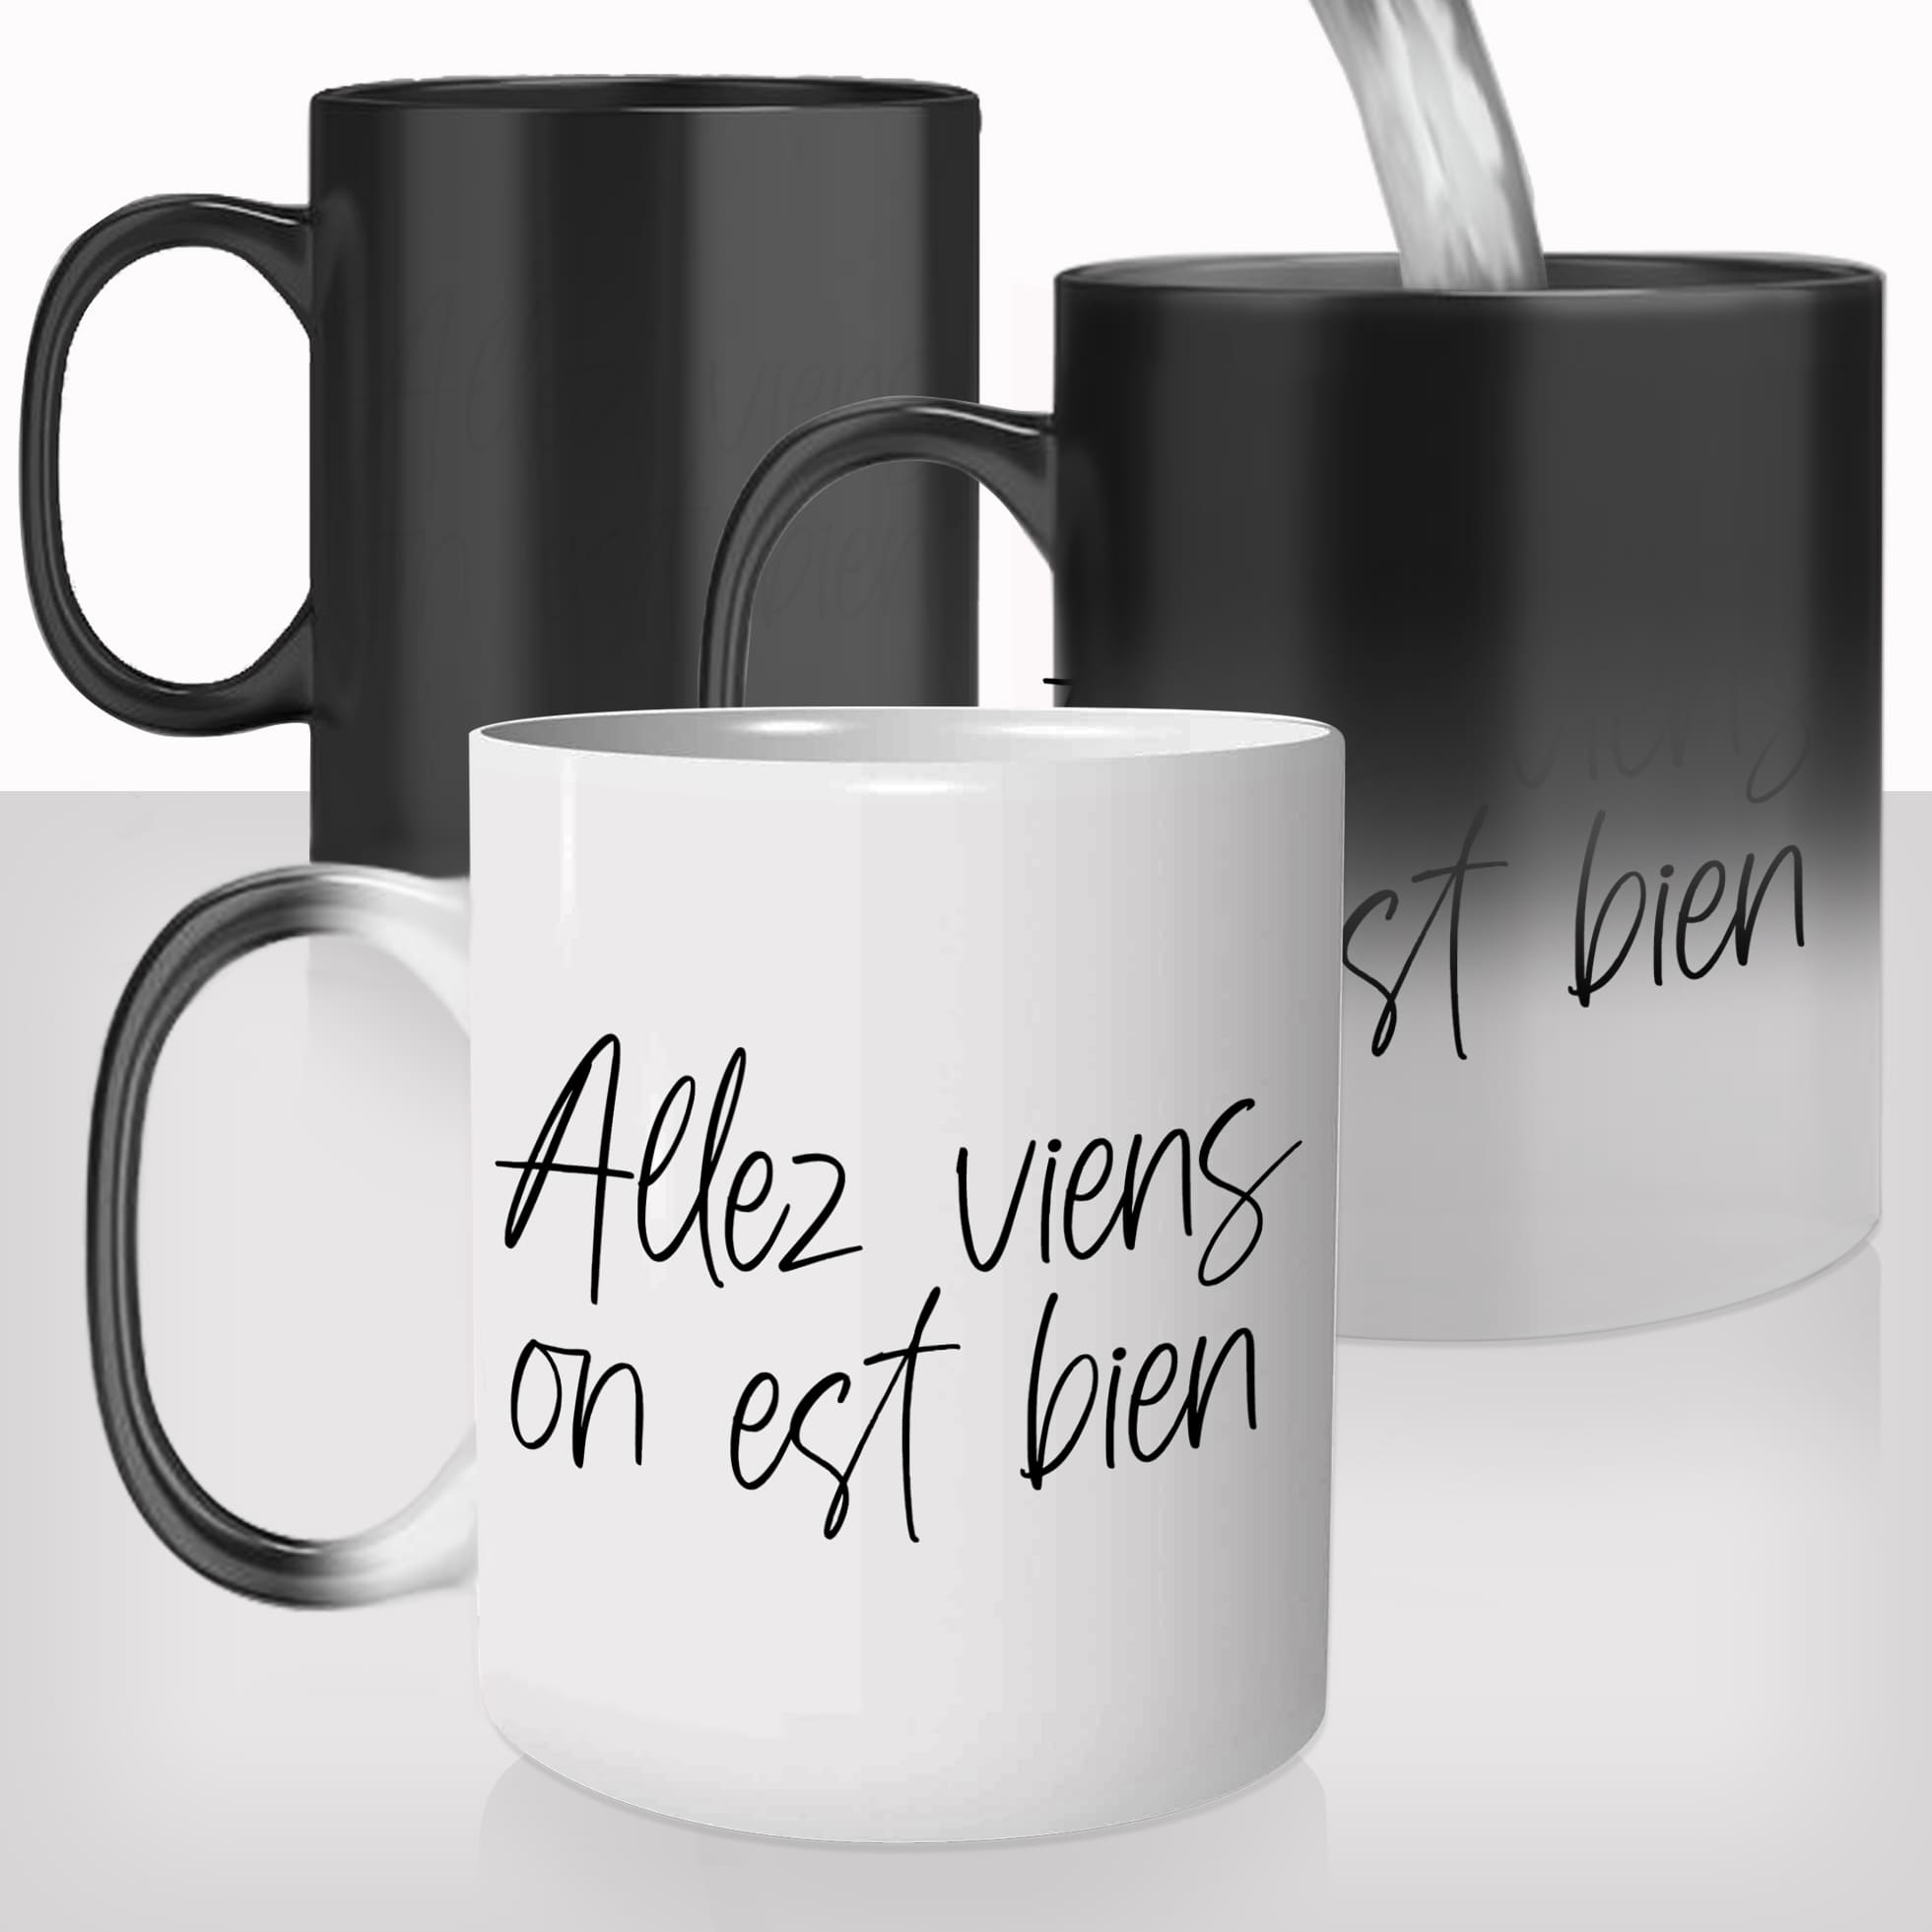 mug-magique-personnalisable-thermoreactif-thermique-tasse-allez-viens-on-est-bien-citation-phrase-personnalisés-fun-idée-cadeau-original-café